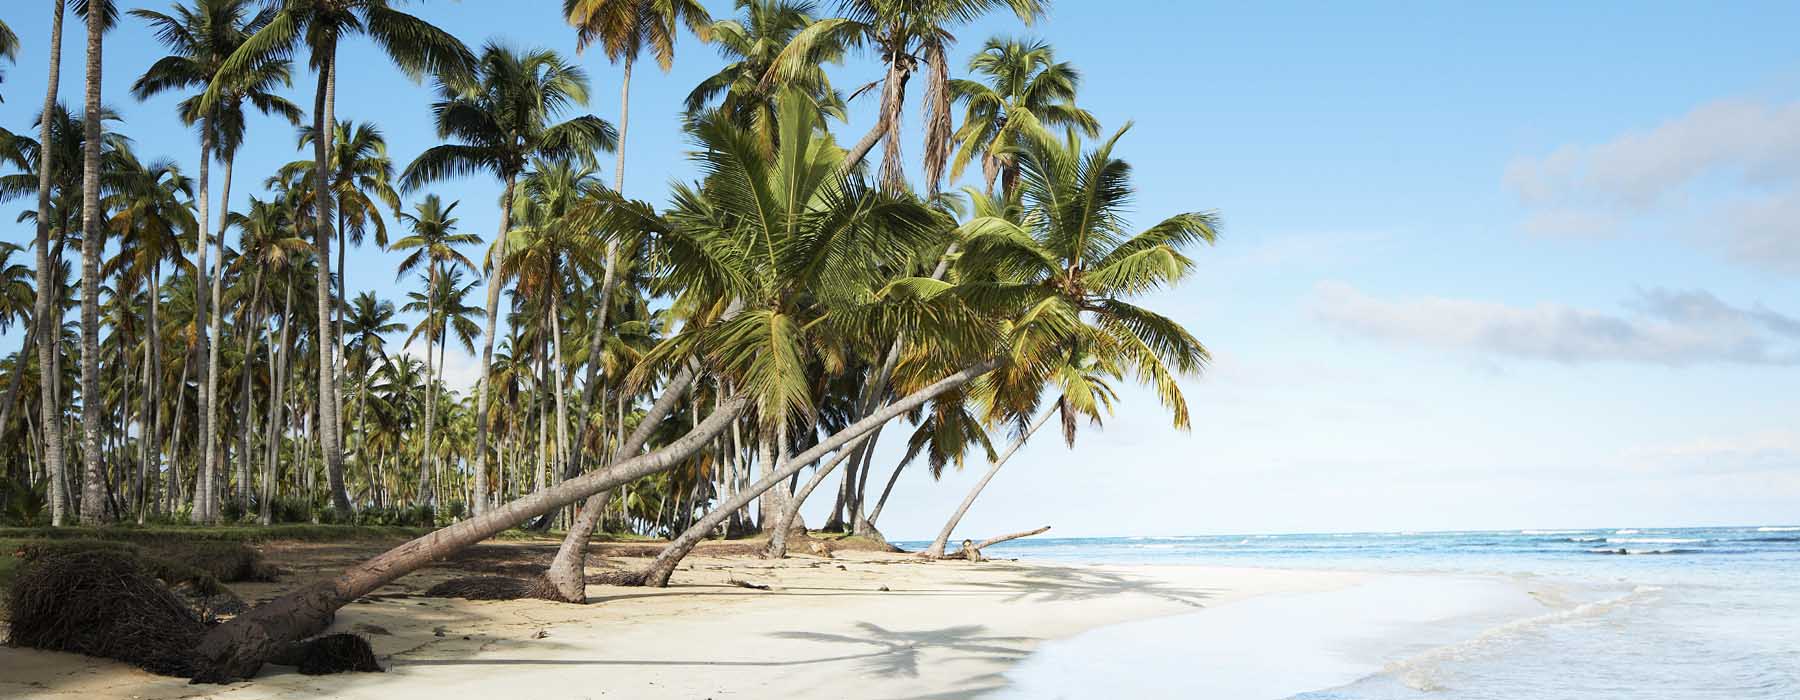 Vacances de la Toussaint République dominicaine